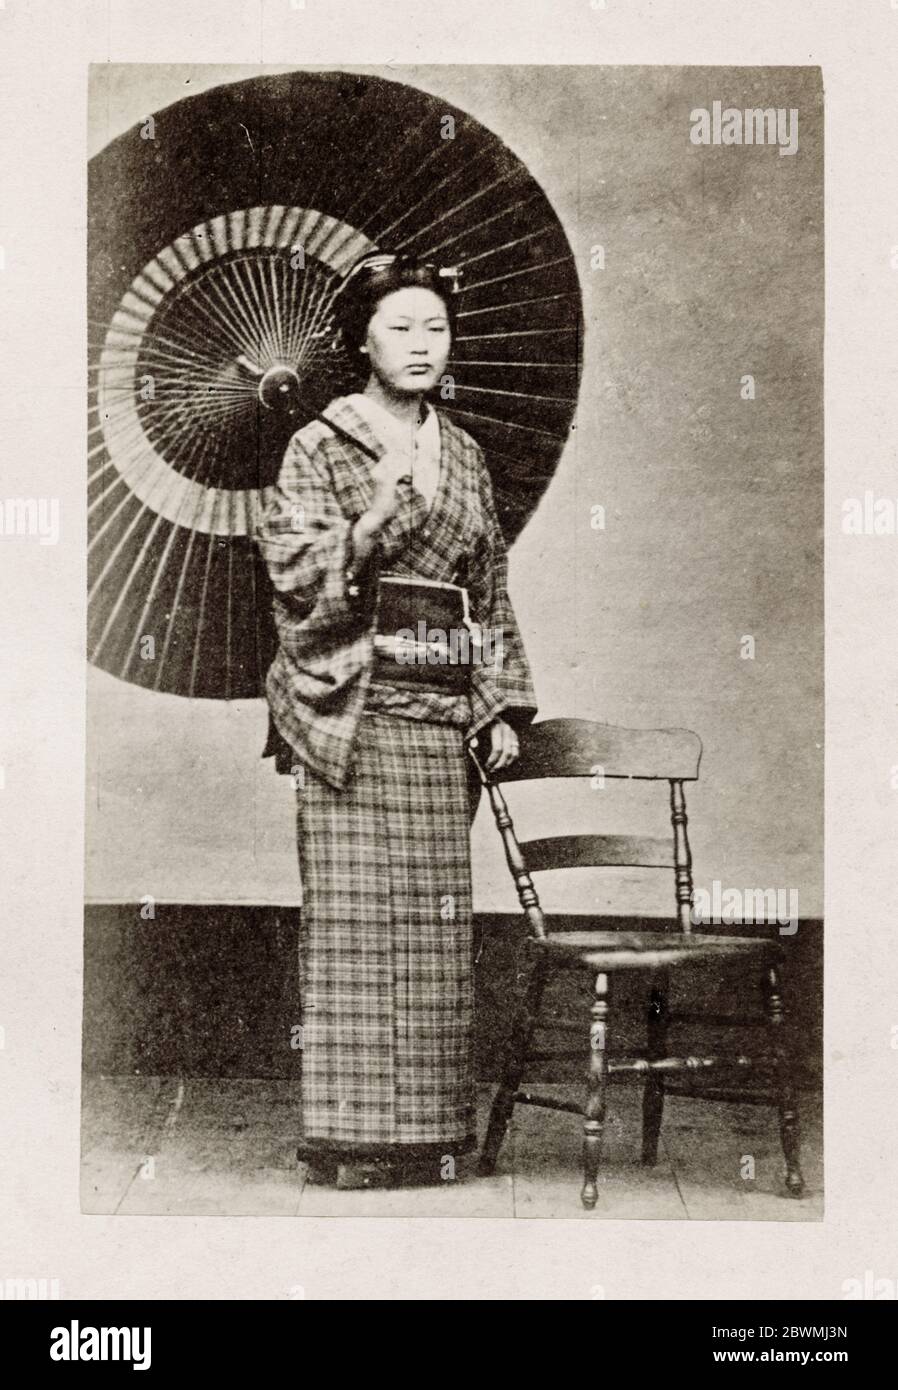 Photographie du XIXe siècle - Portrait photographique du Japon, probablement l'œuvre du photographe japonais Shimooka Renjo - femme avec parasol, parapluie. Banque D'Images